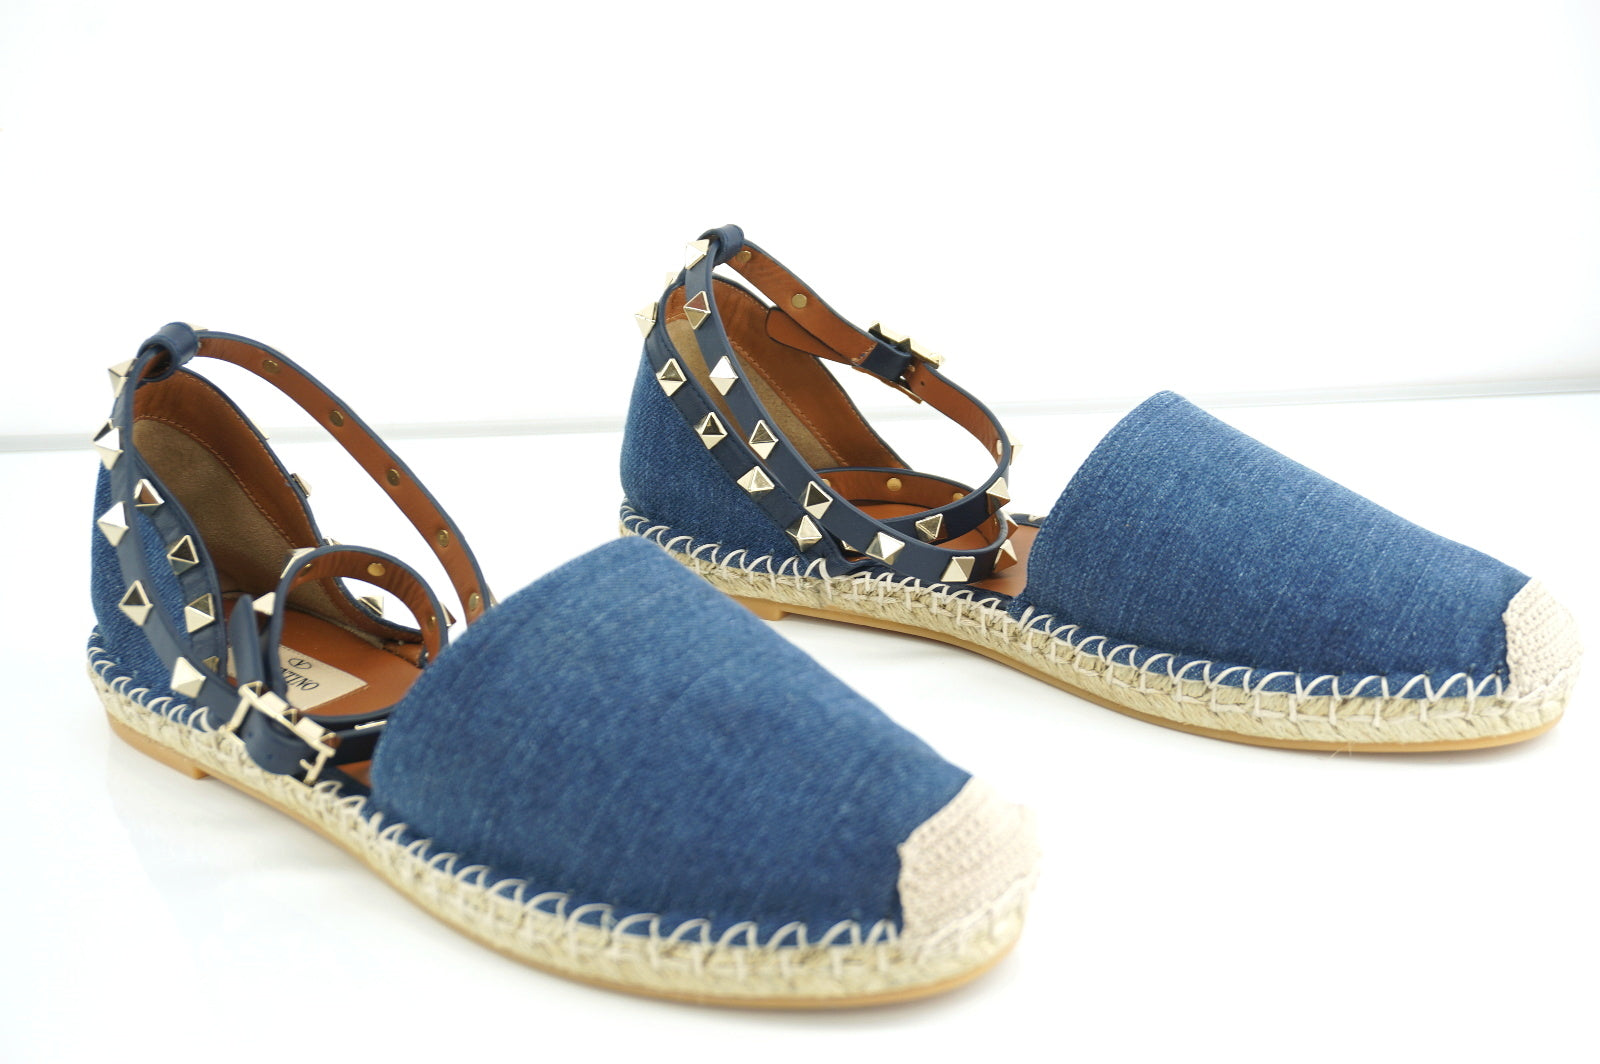 Valentino Rockstud Light Blue Denim Ankle Strap Flat Sandals Size 40 10 NIB $745